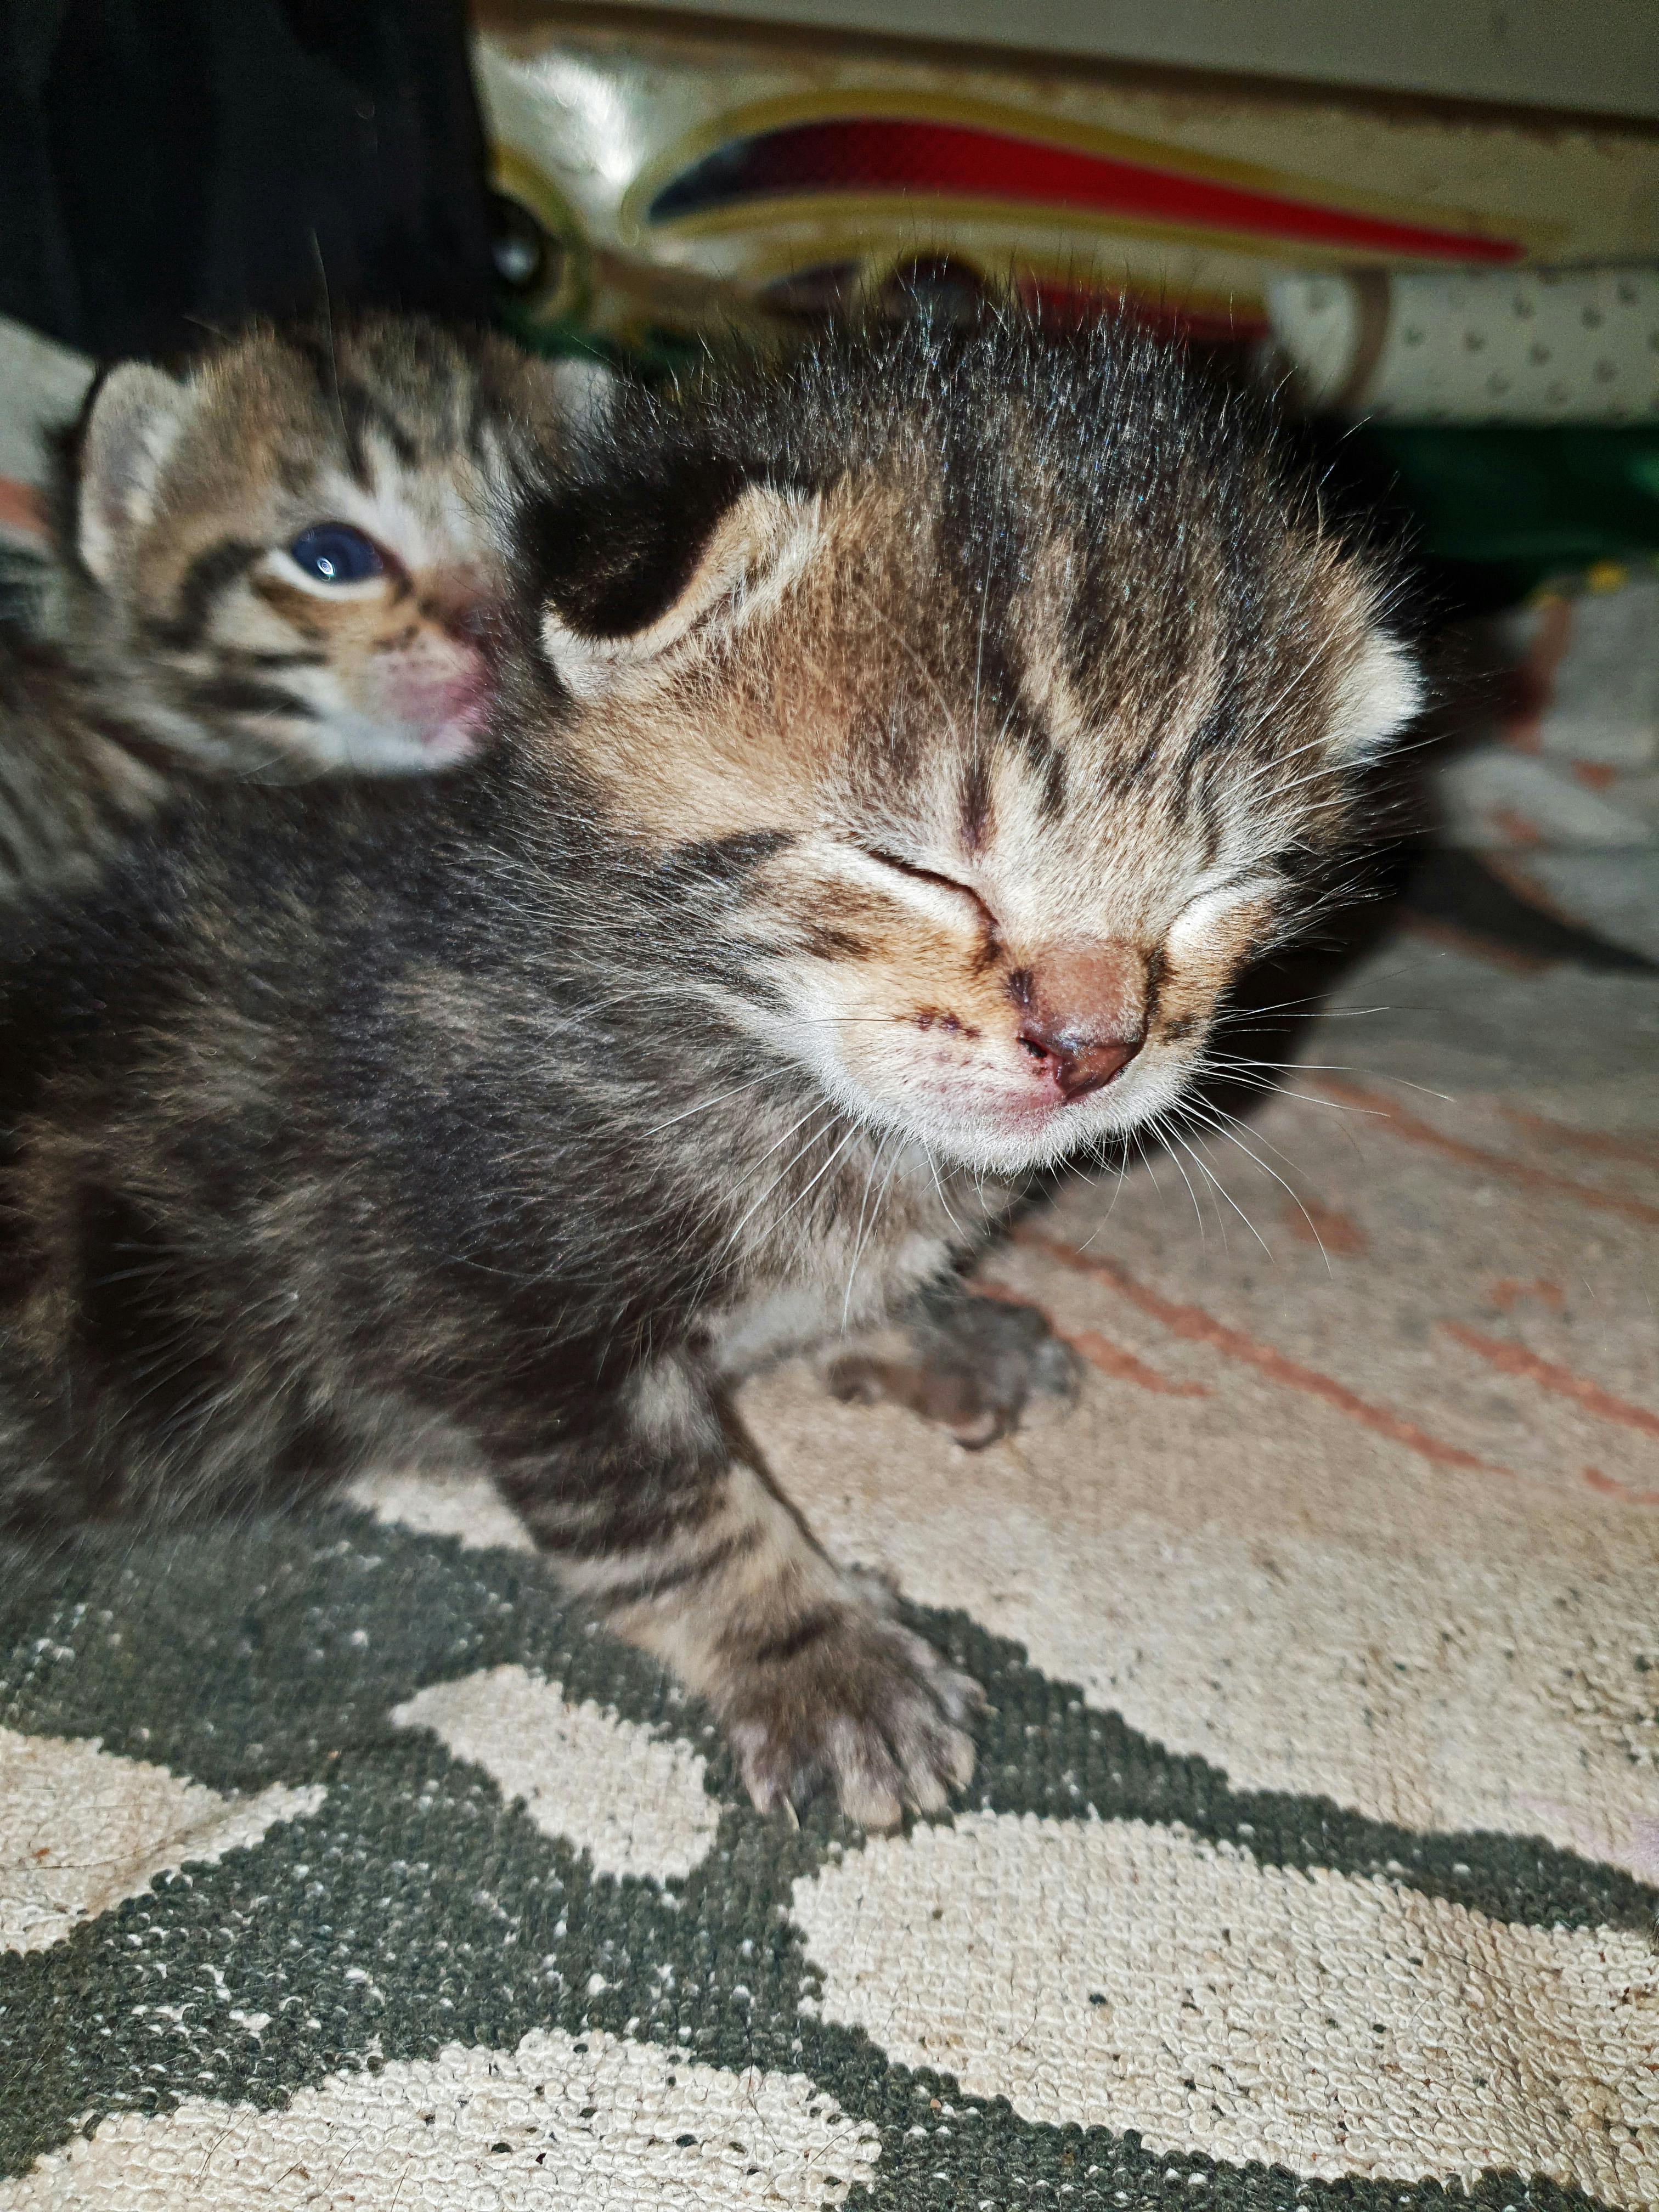  bayi  Gambar Bayi Kucing  Baru Lahir